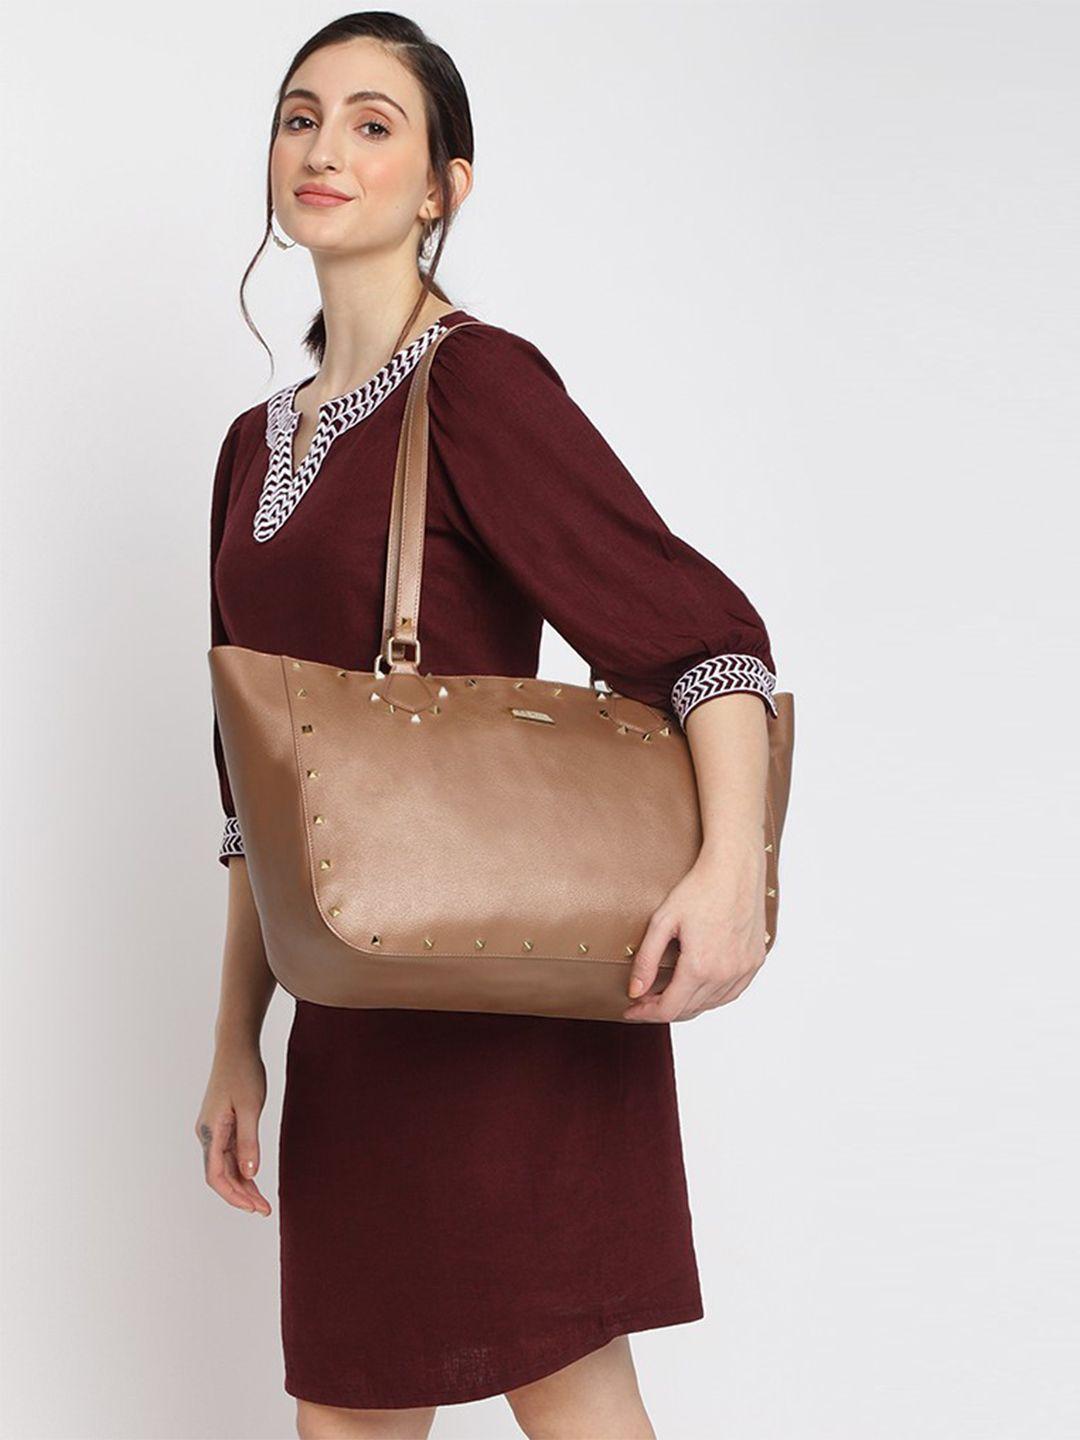 kleio oversized studded shopper bag